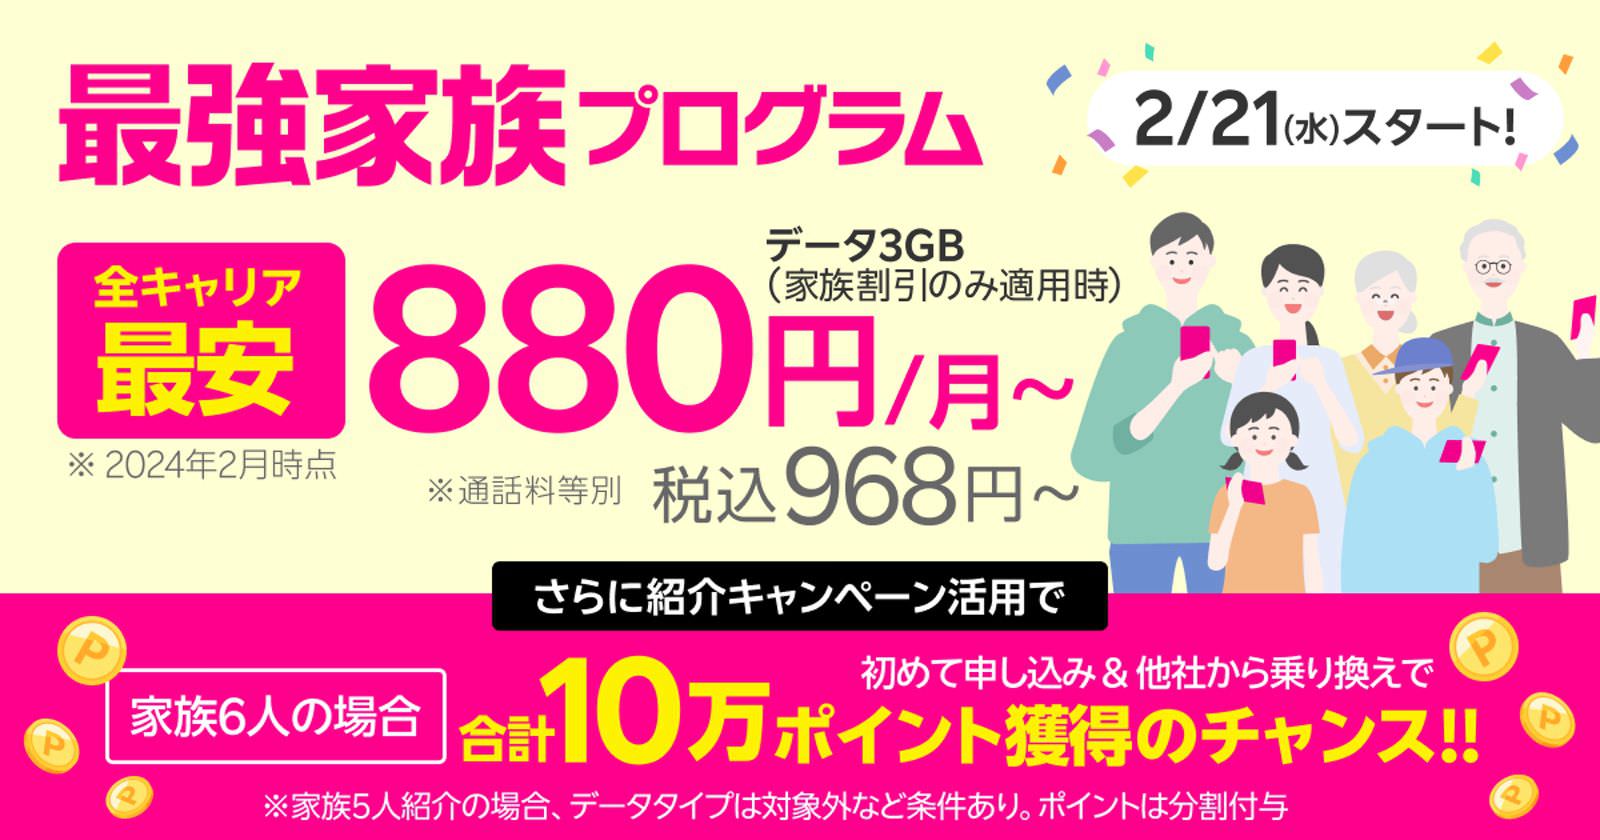 Rakuten-Saikyo-Family-Pricedown-01.jpg